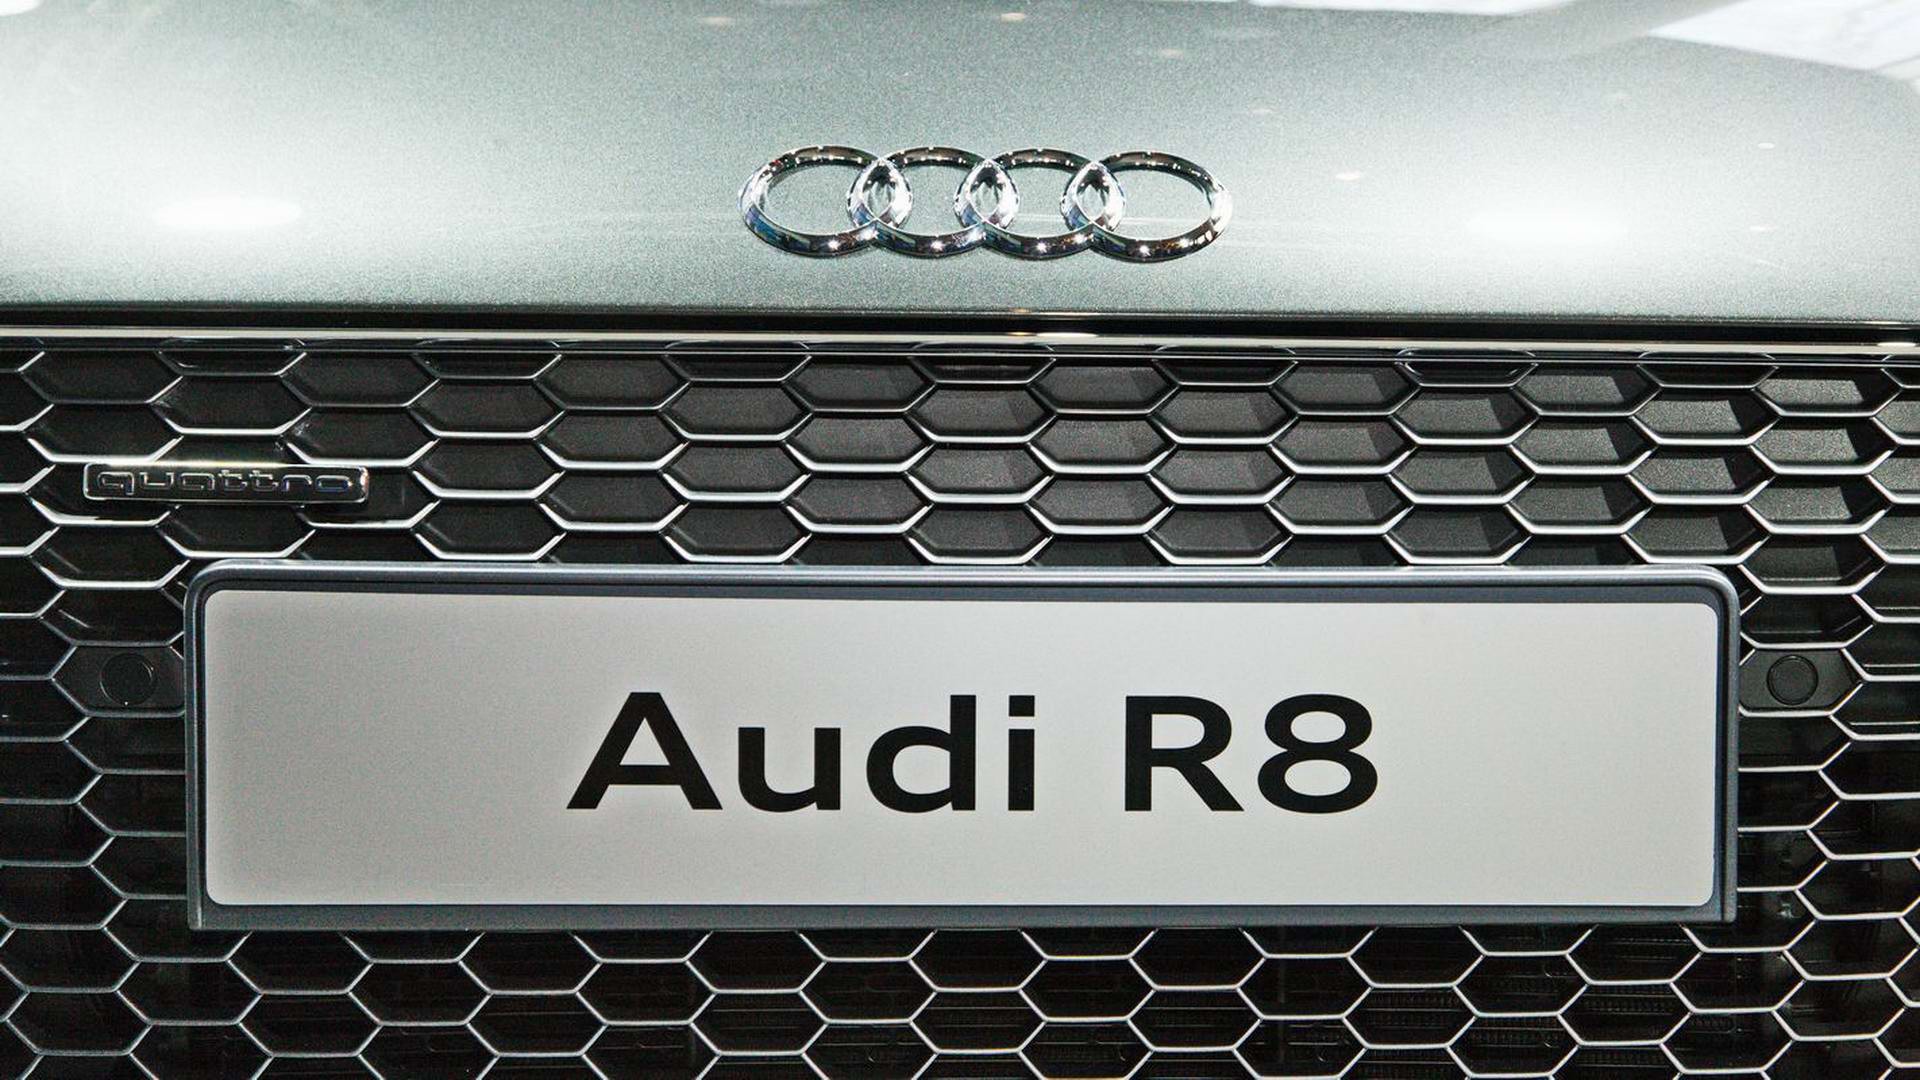 Audi R8 Release Präsentation in der Audi City / Berlin  by Gregor Anthes